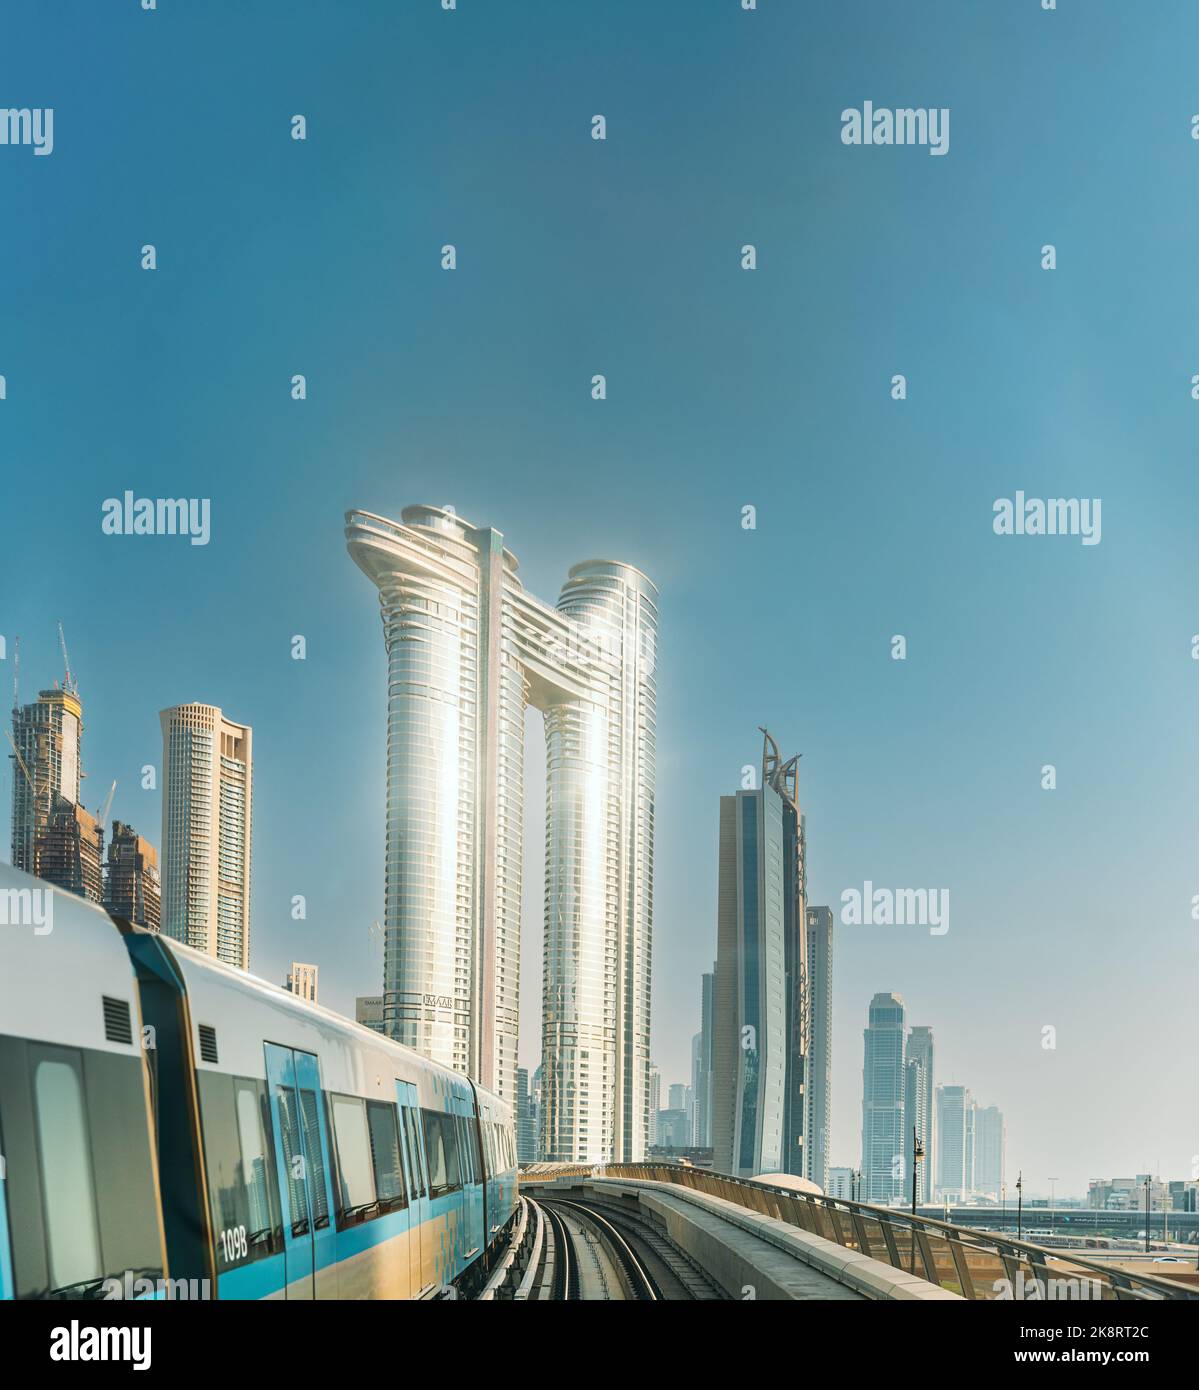 Monorraíl Metro paseos en tren entre rascacielos de vidrio en Dubai. Tráfico en la calle en Dubai. Horizonte urbano. Fondo urbano Foto de stock